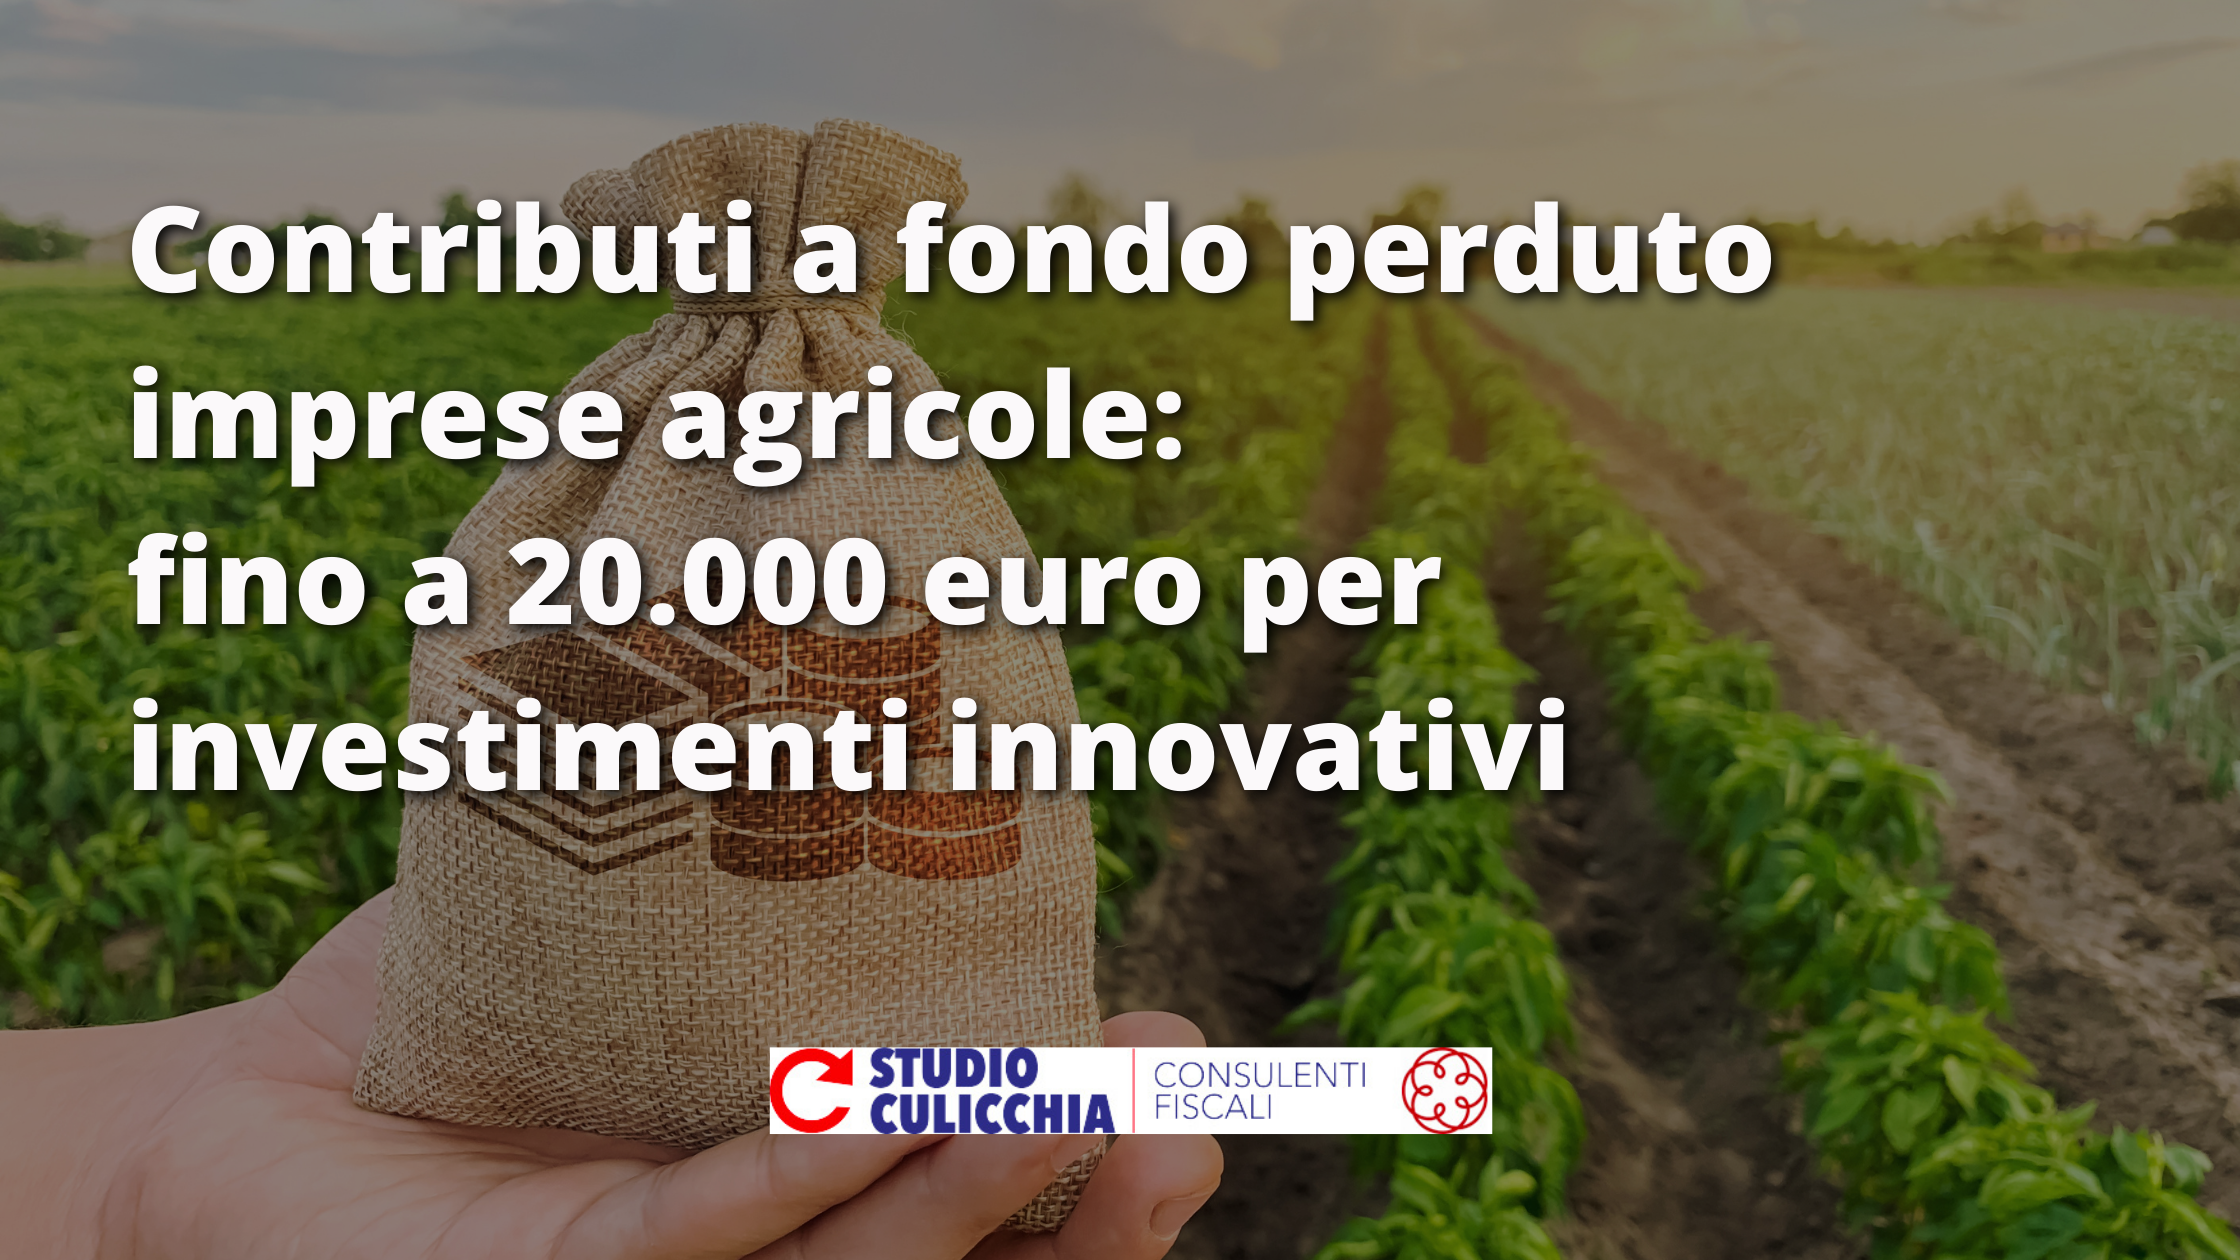 Contributi a fondo perduto investimenti innovativi per imprese agricole